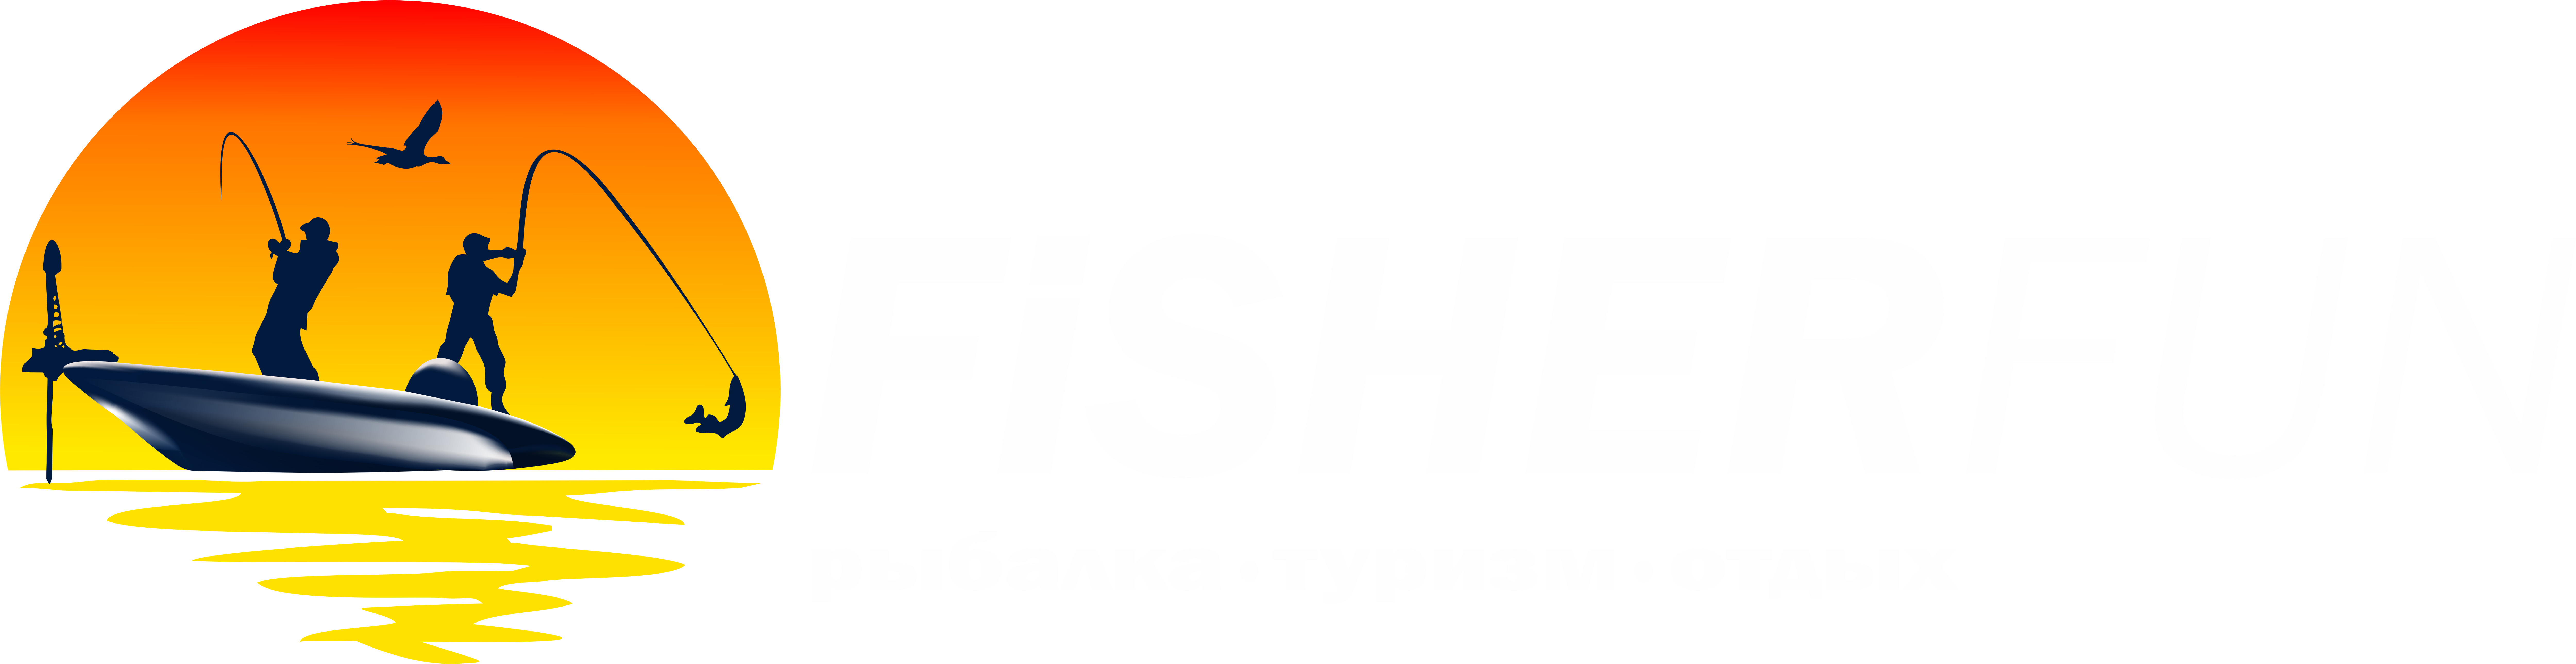 Интернет-магазин для активного отдыха Fisherfun